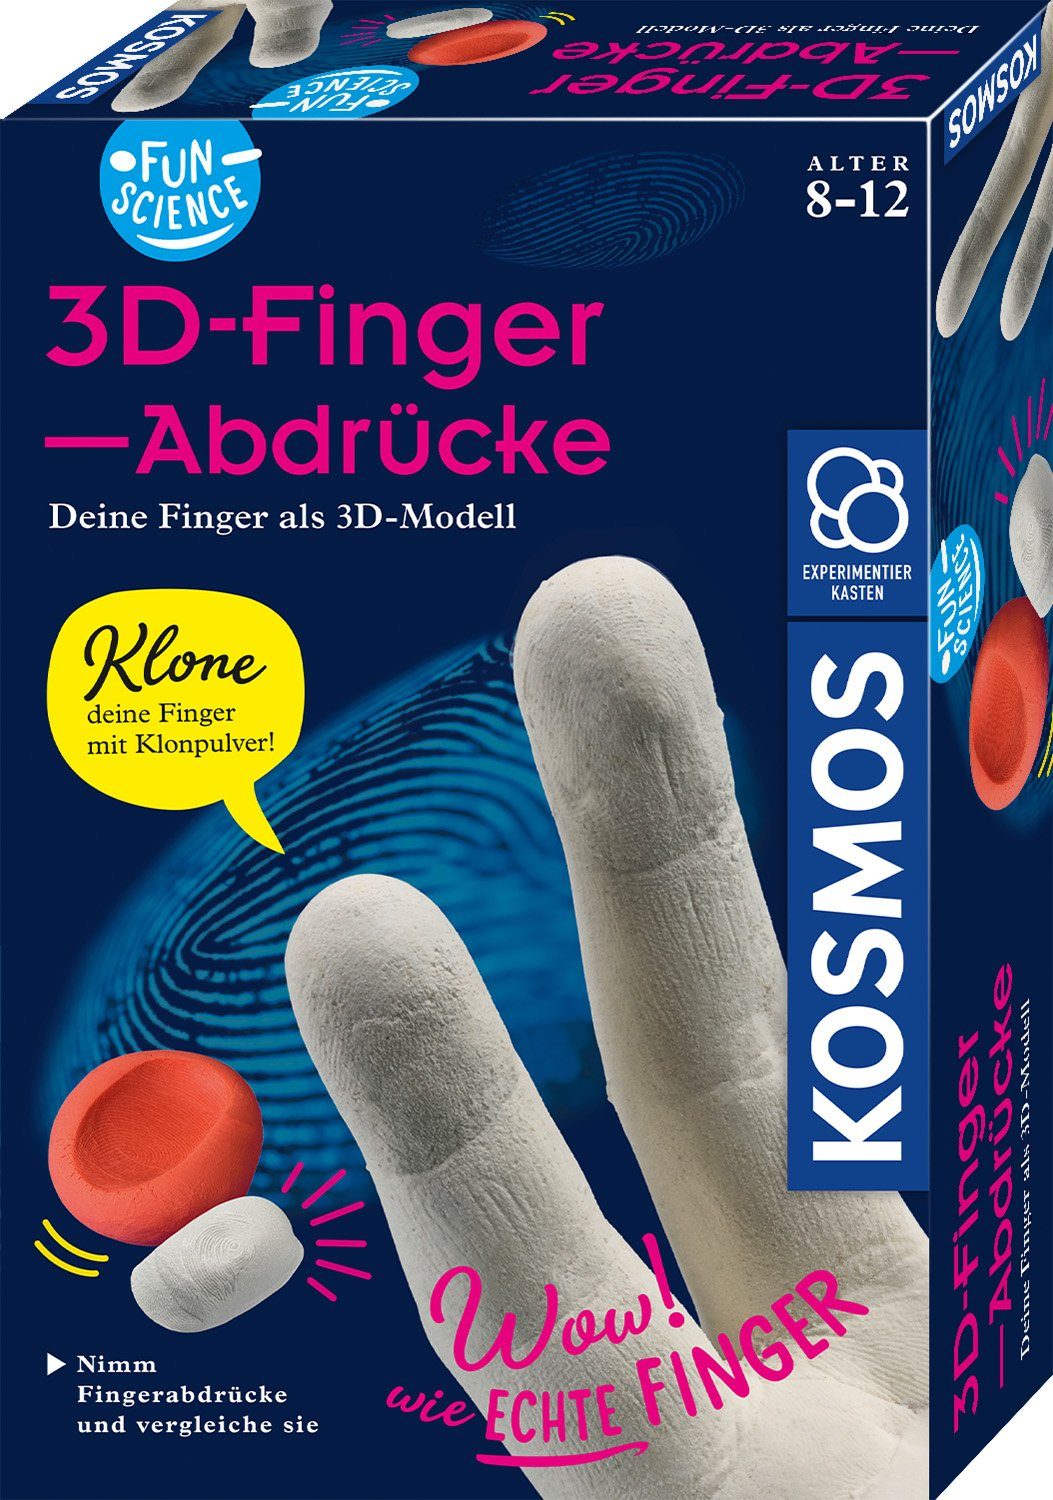 3D als Lernspielzeug Kosmos Science Fun 3D-Fingerabdrücke Skulptur